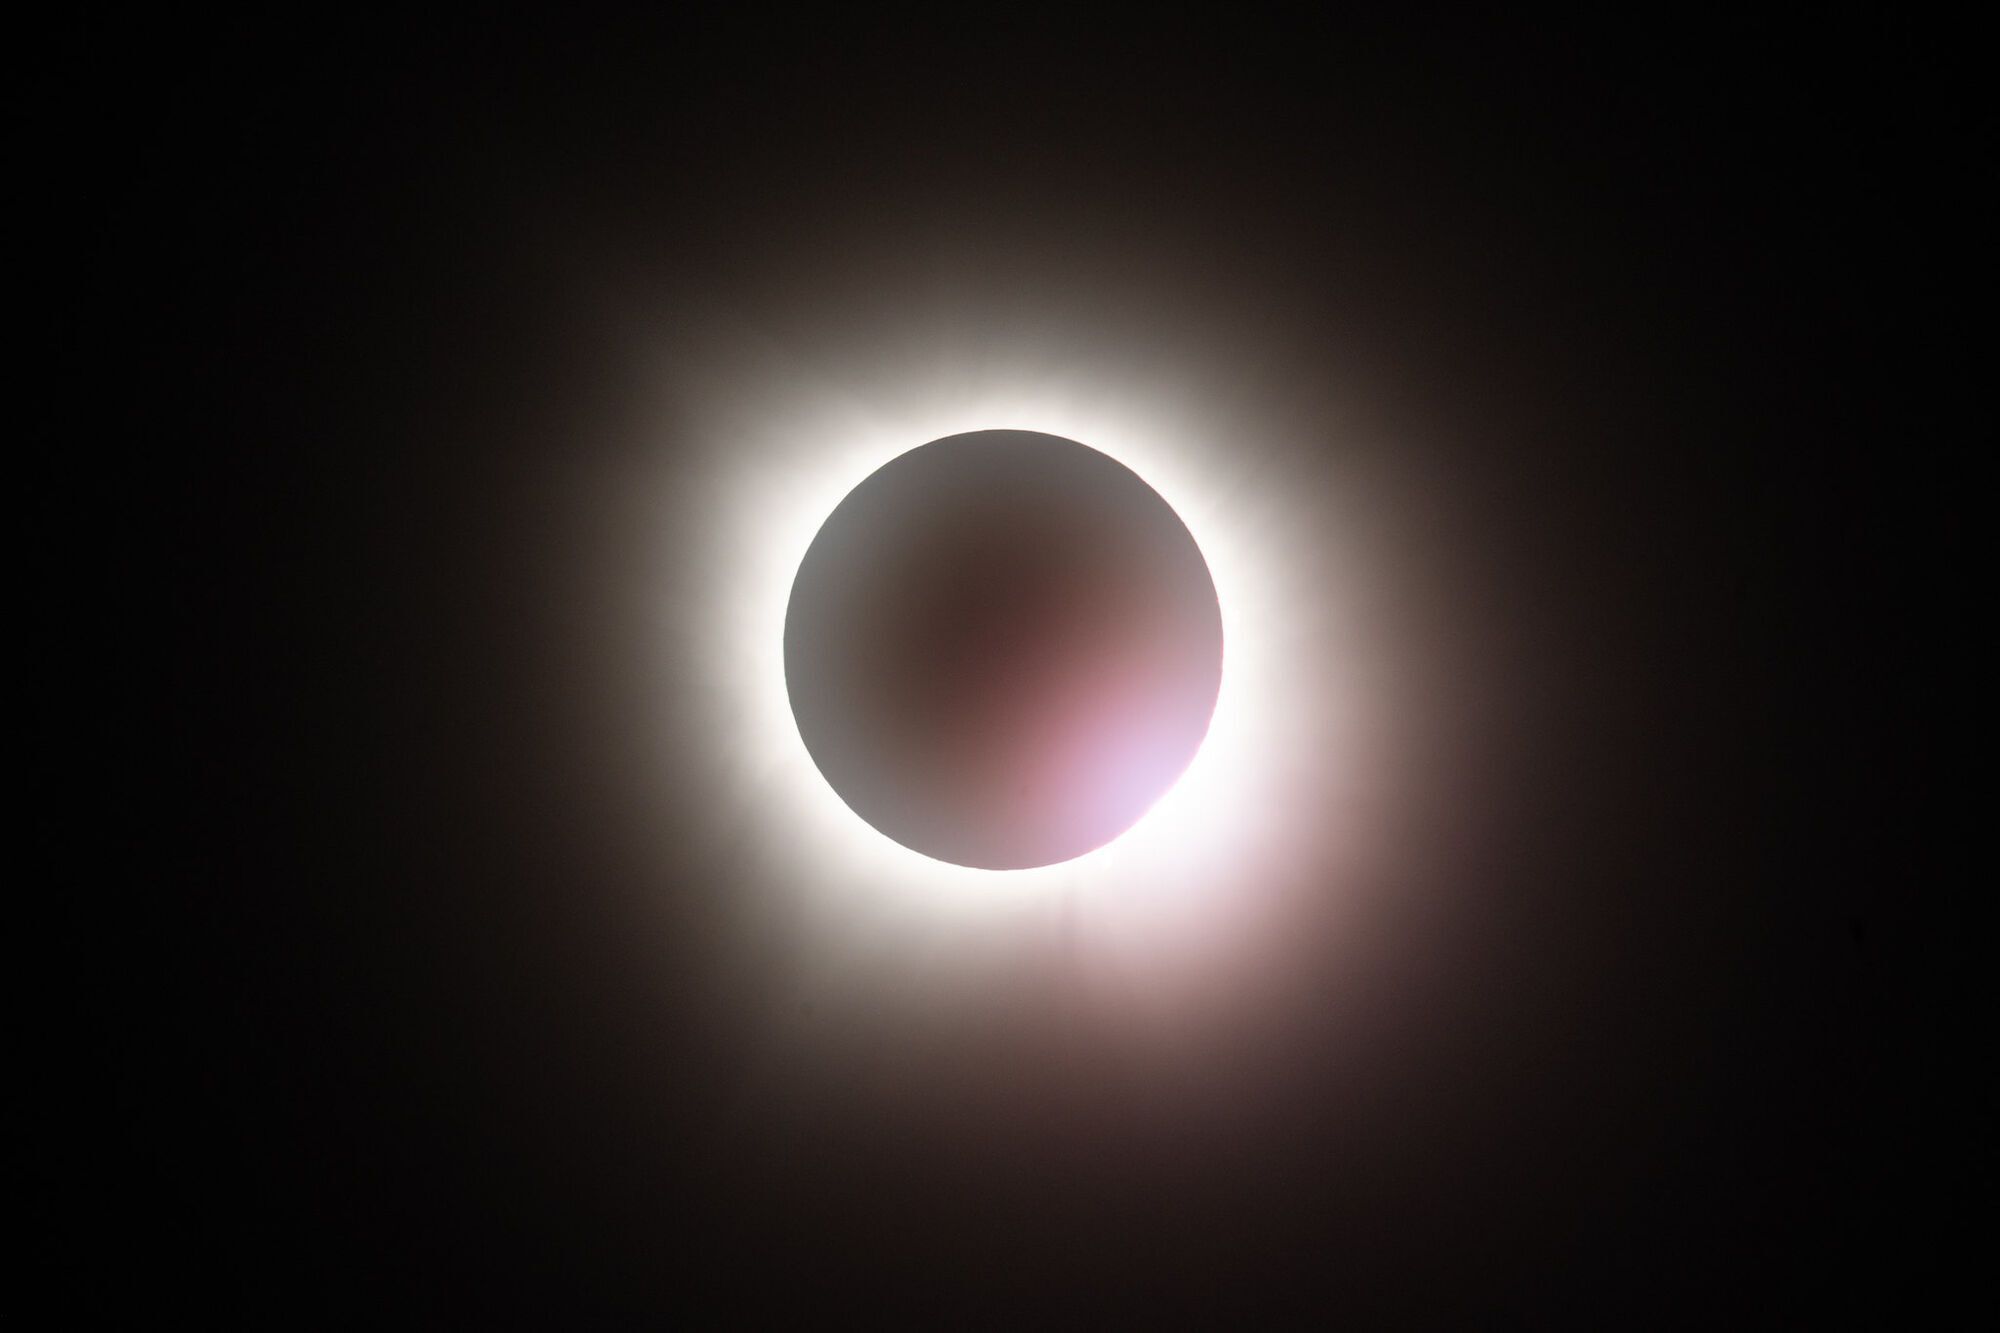 Місяць закрив Сонце на 4 хвилини: у західній півкулі спостерігали сонячне затемнення. Фото і відео
